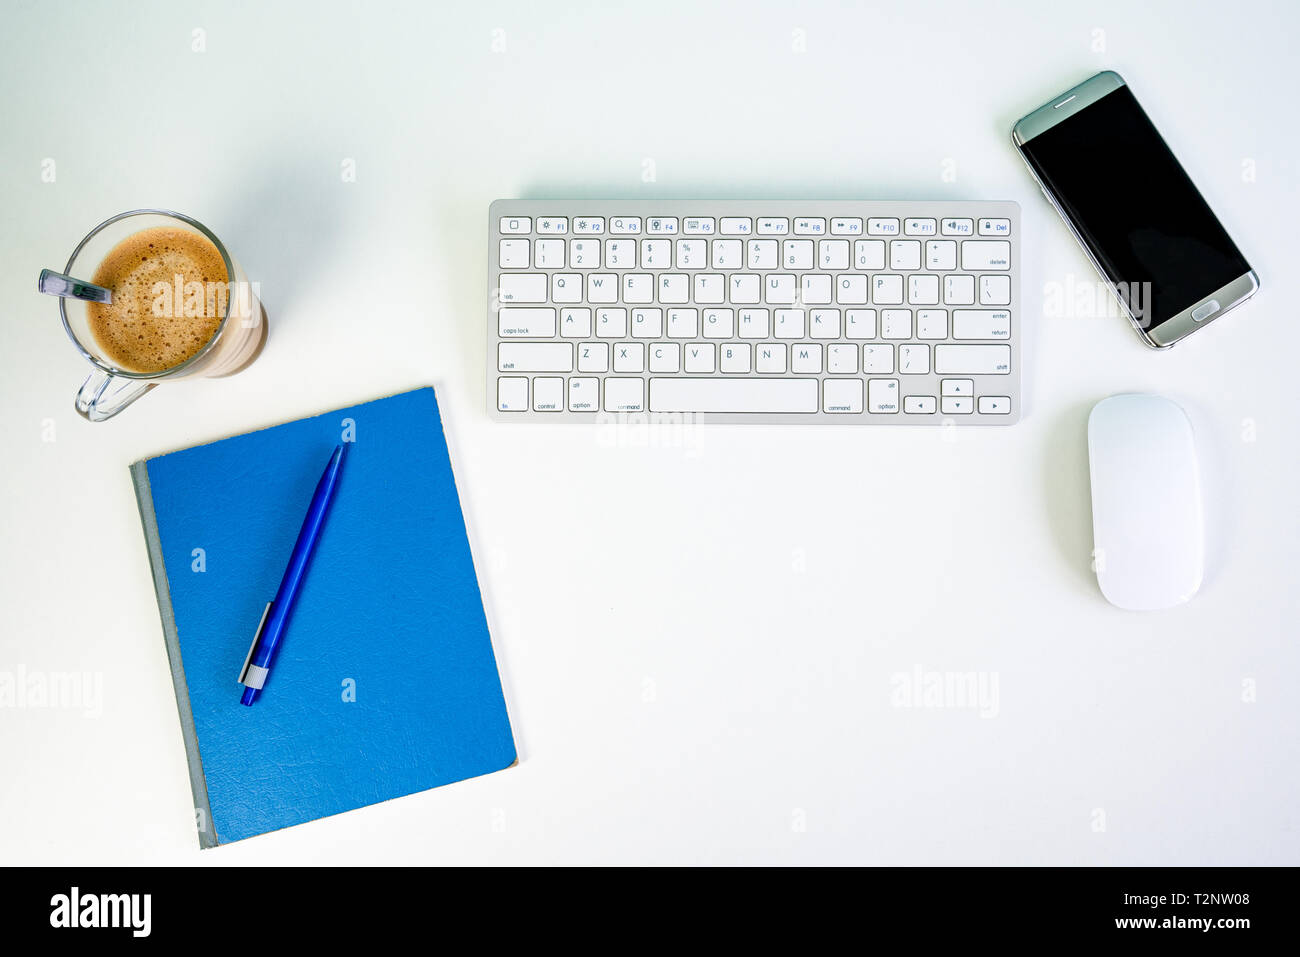 White Bureau bureau avec clavier, souris sans fil, smartphone, tasse de café, un crayon et un bloc d'écriture Banque D'Images